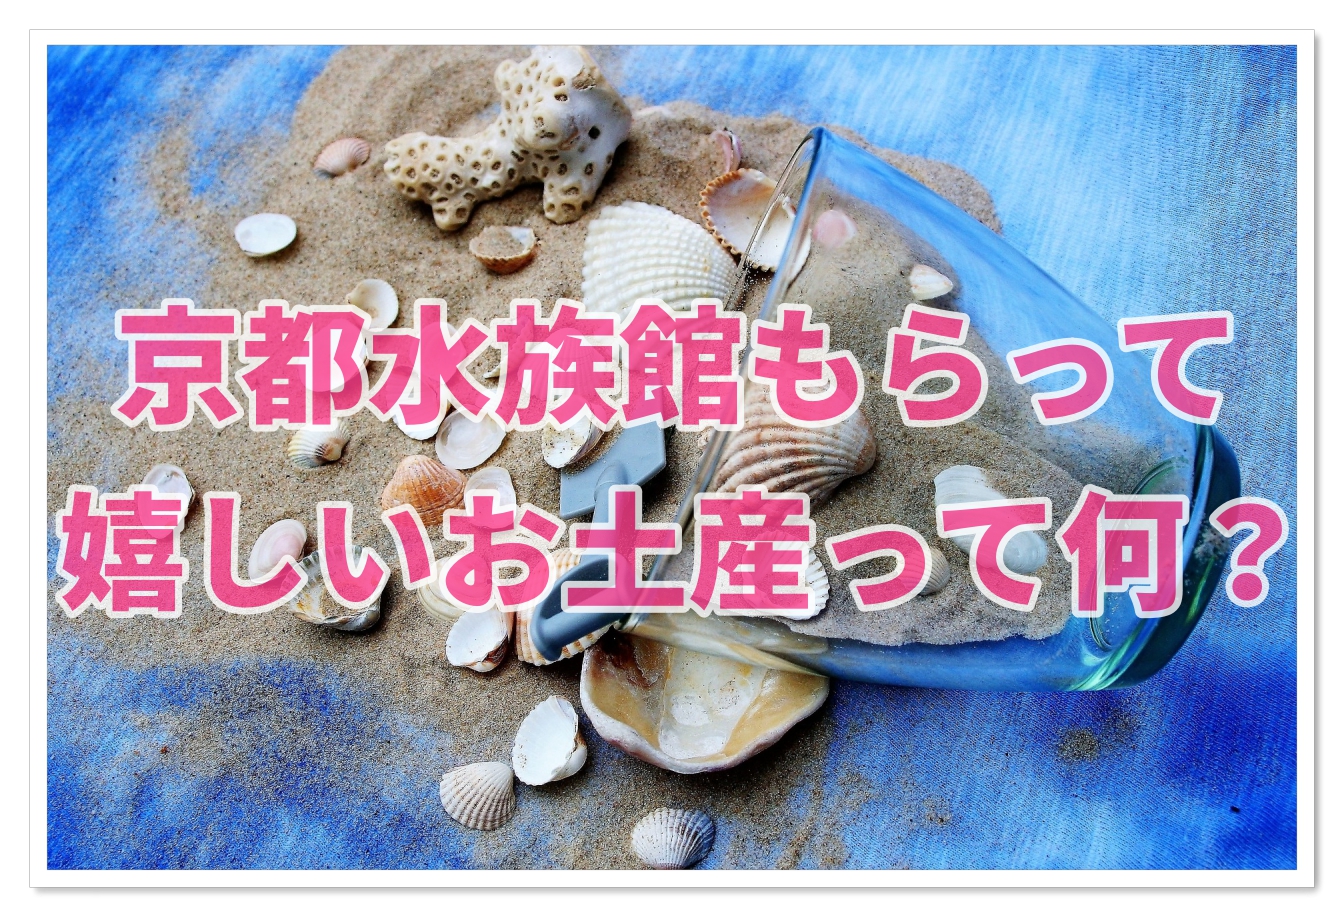 京都水族館のお土産は 推し もらって嬉しいお土産を調査 子連れ旅行を楽しむ鉄板ブログ もう国内旅行は迷わせない